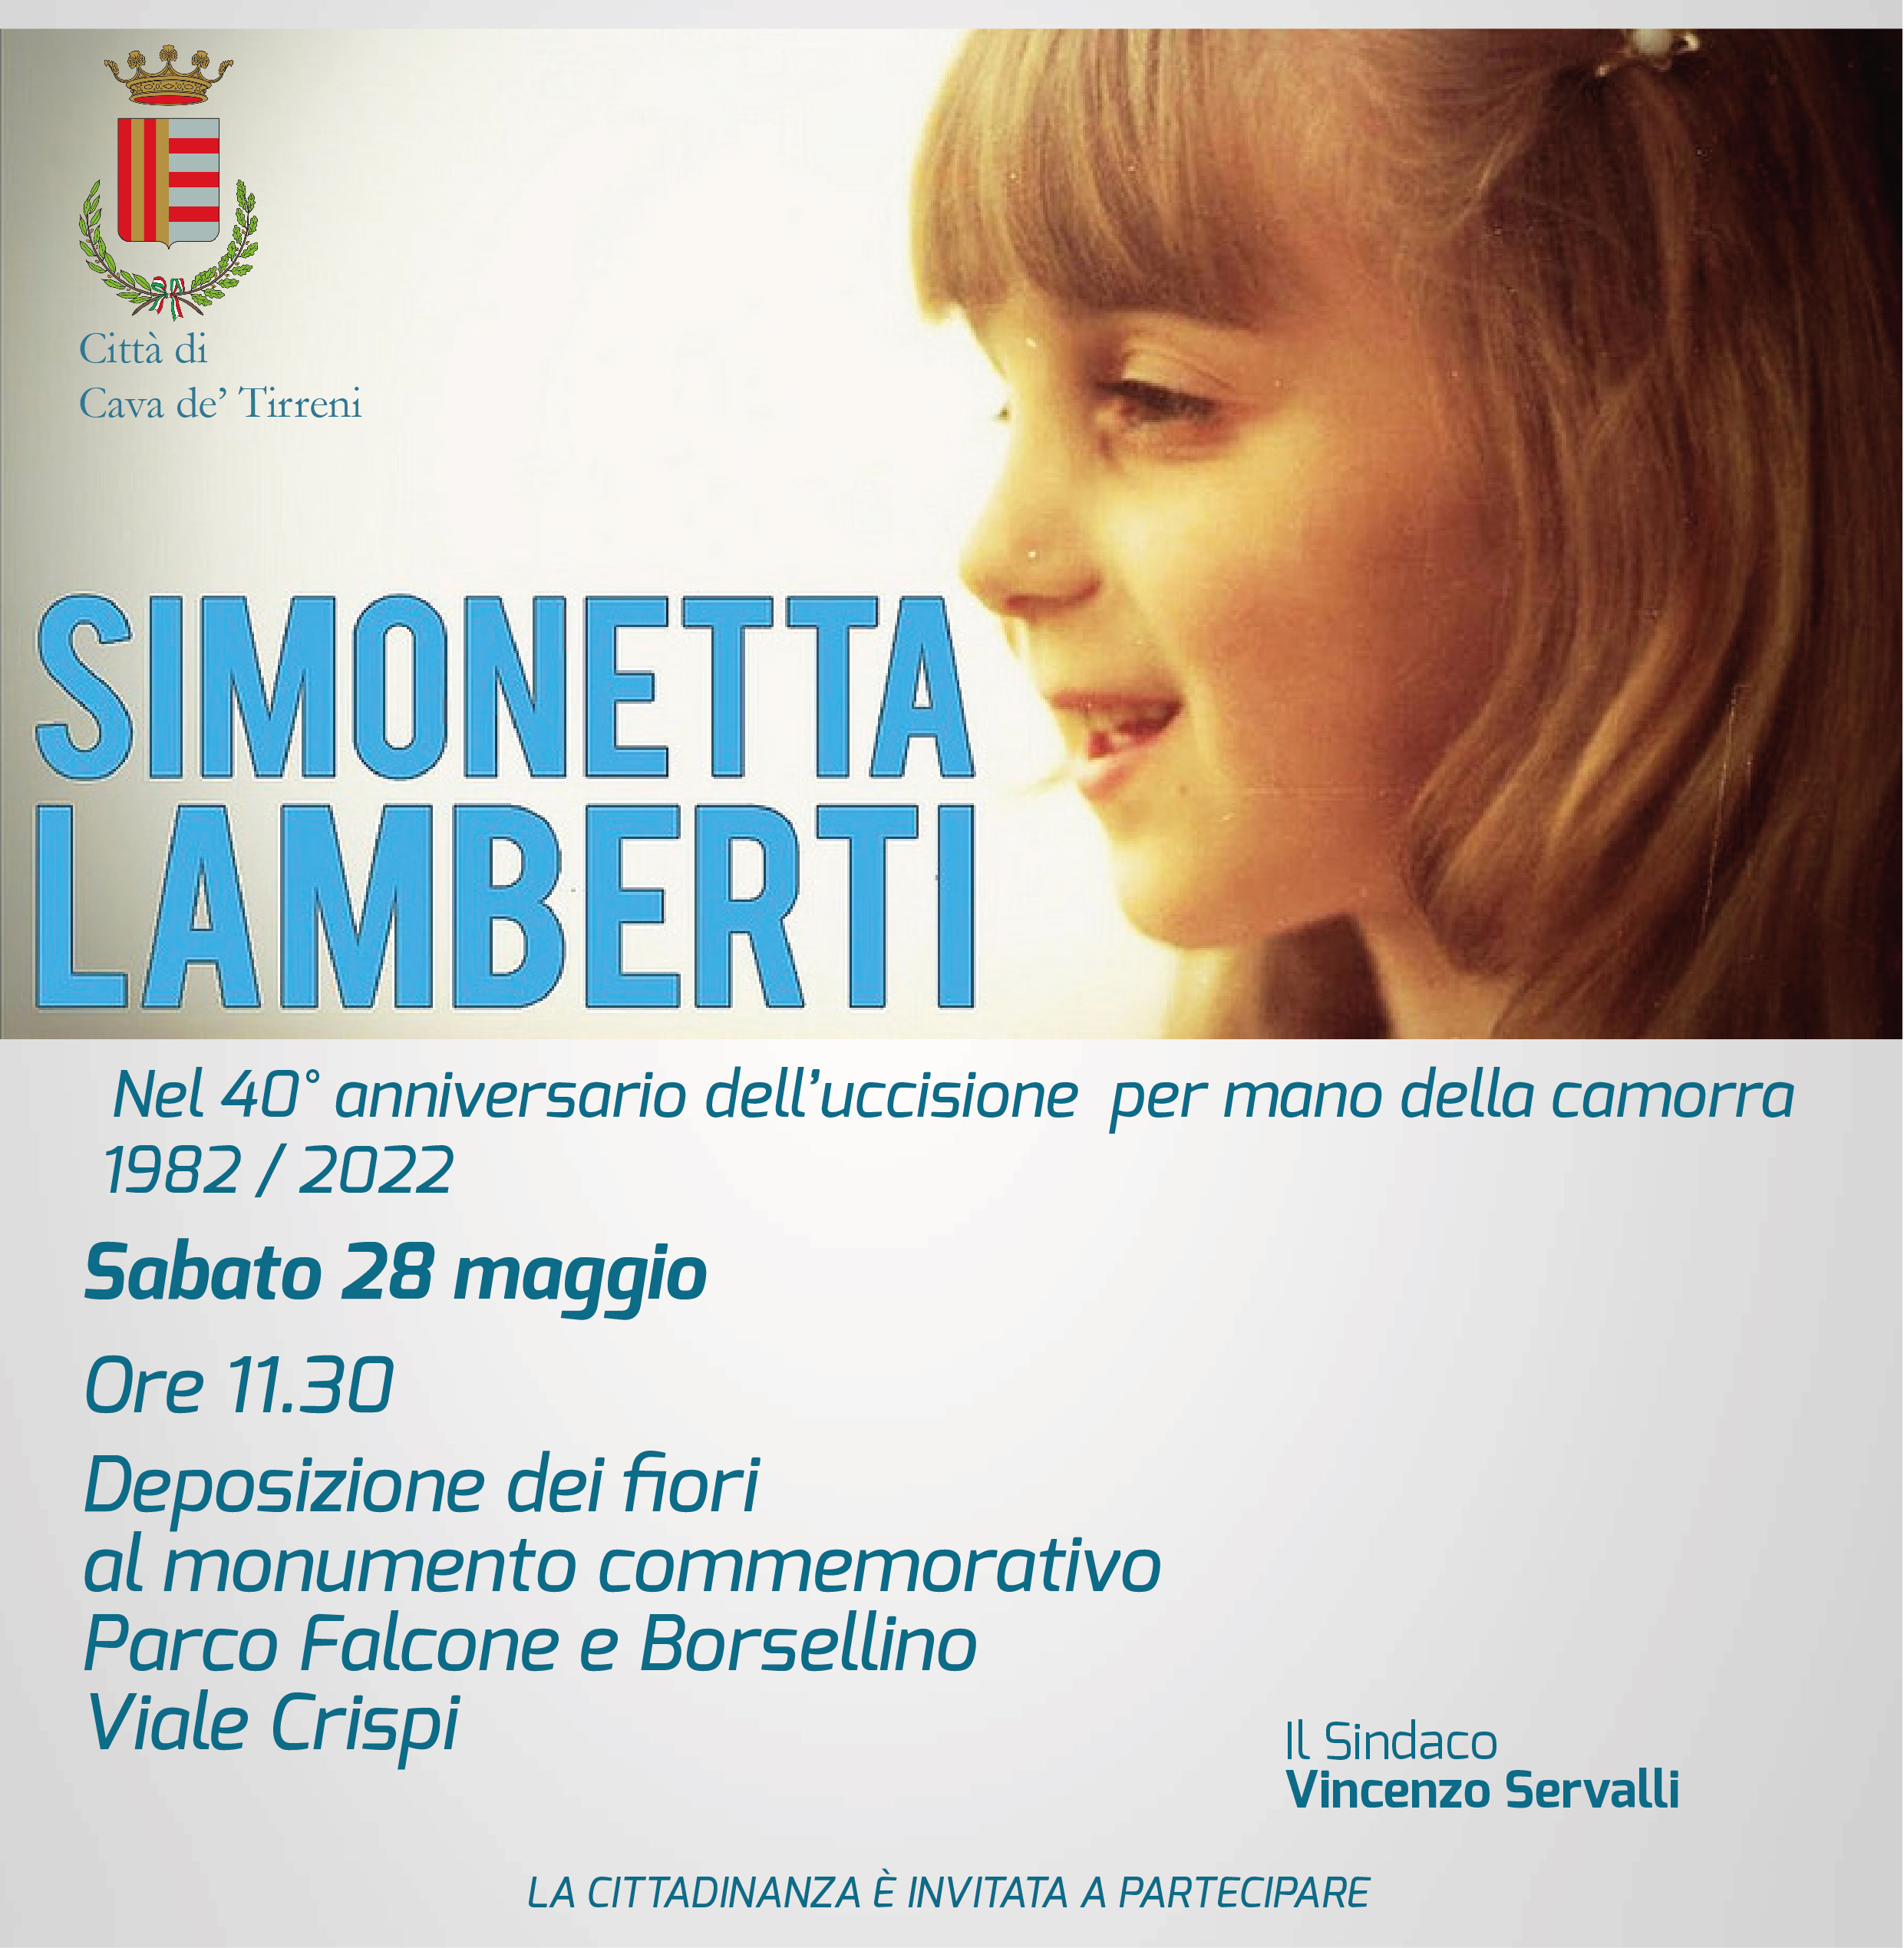 Cava de’ Tirreni: 40° anniversario uccisione Simonetta Lamberti